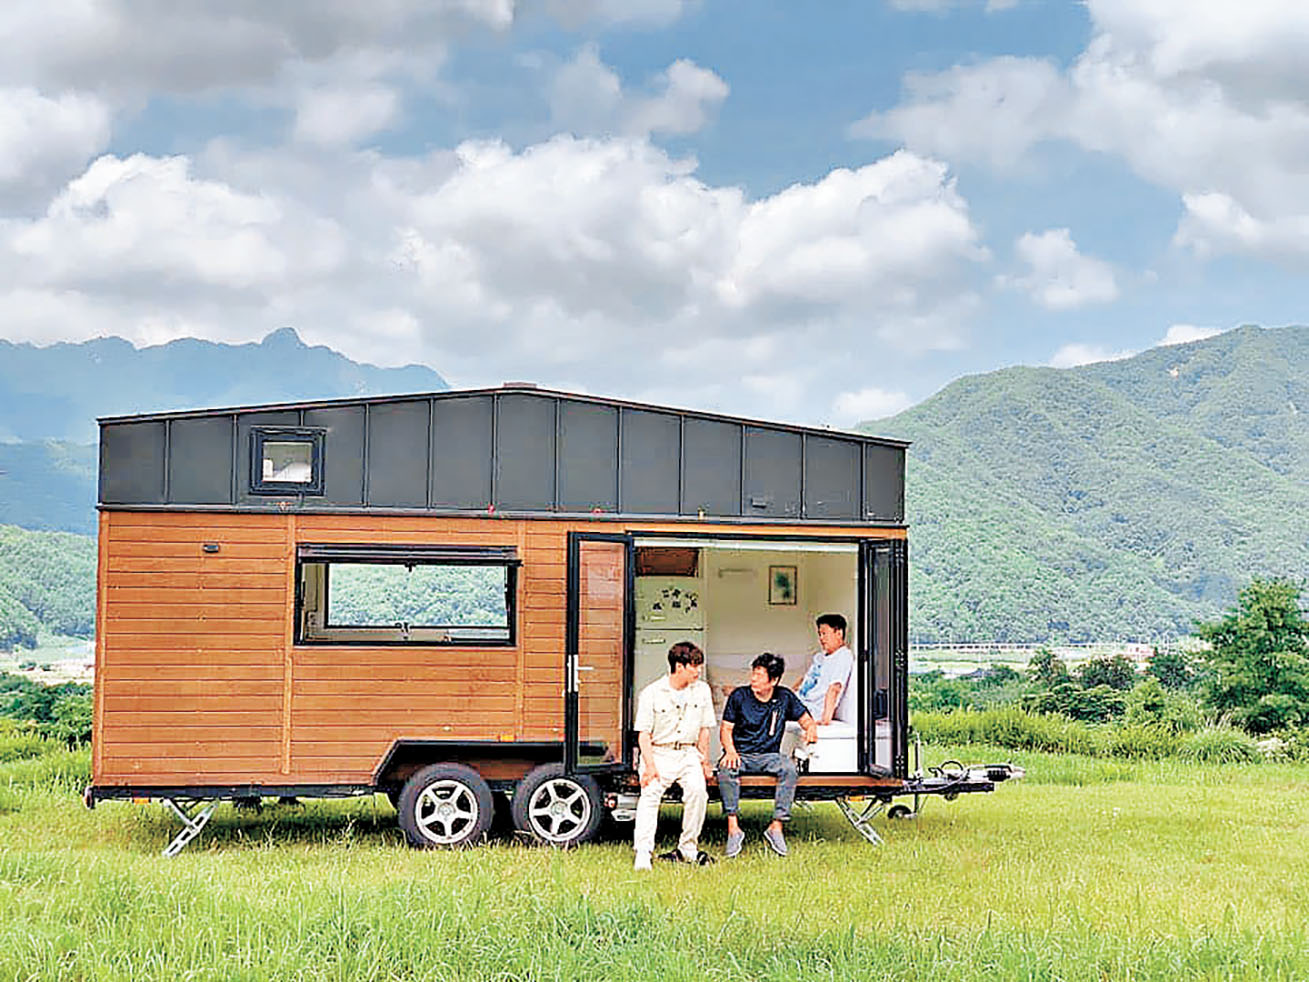 ■《帶輪子的家》描述3名韓星駕着迷你車屋在郊外露營的有趣生活。